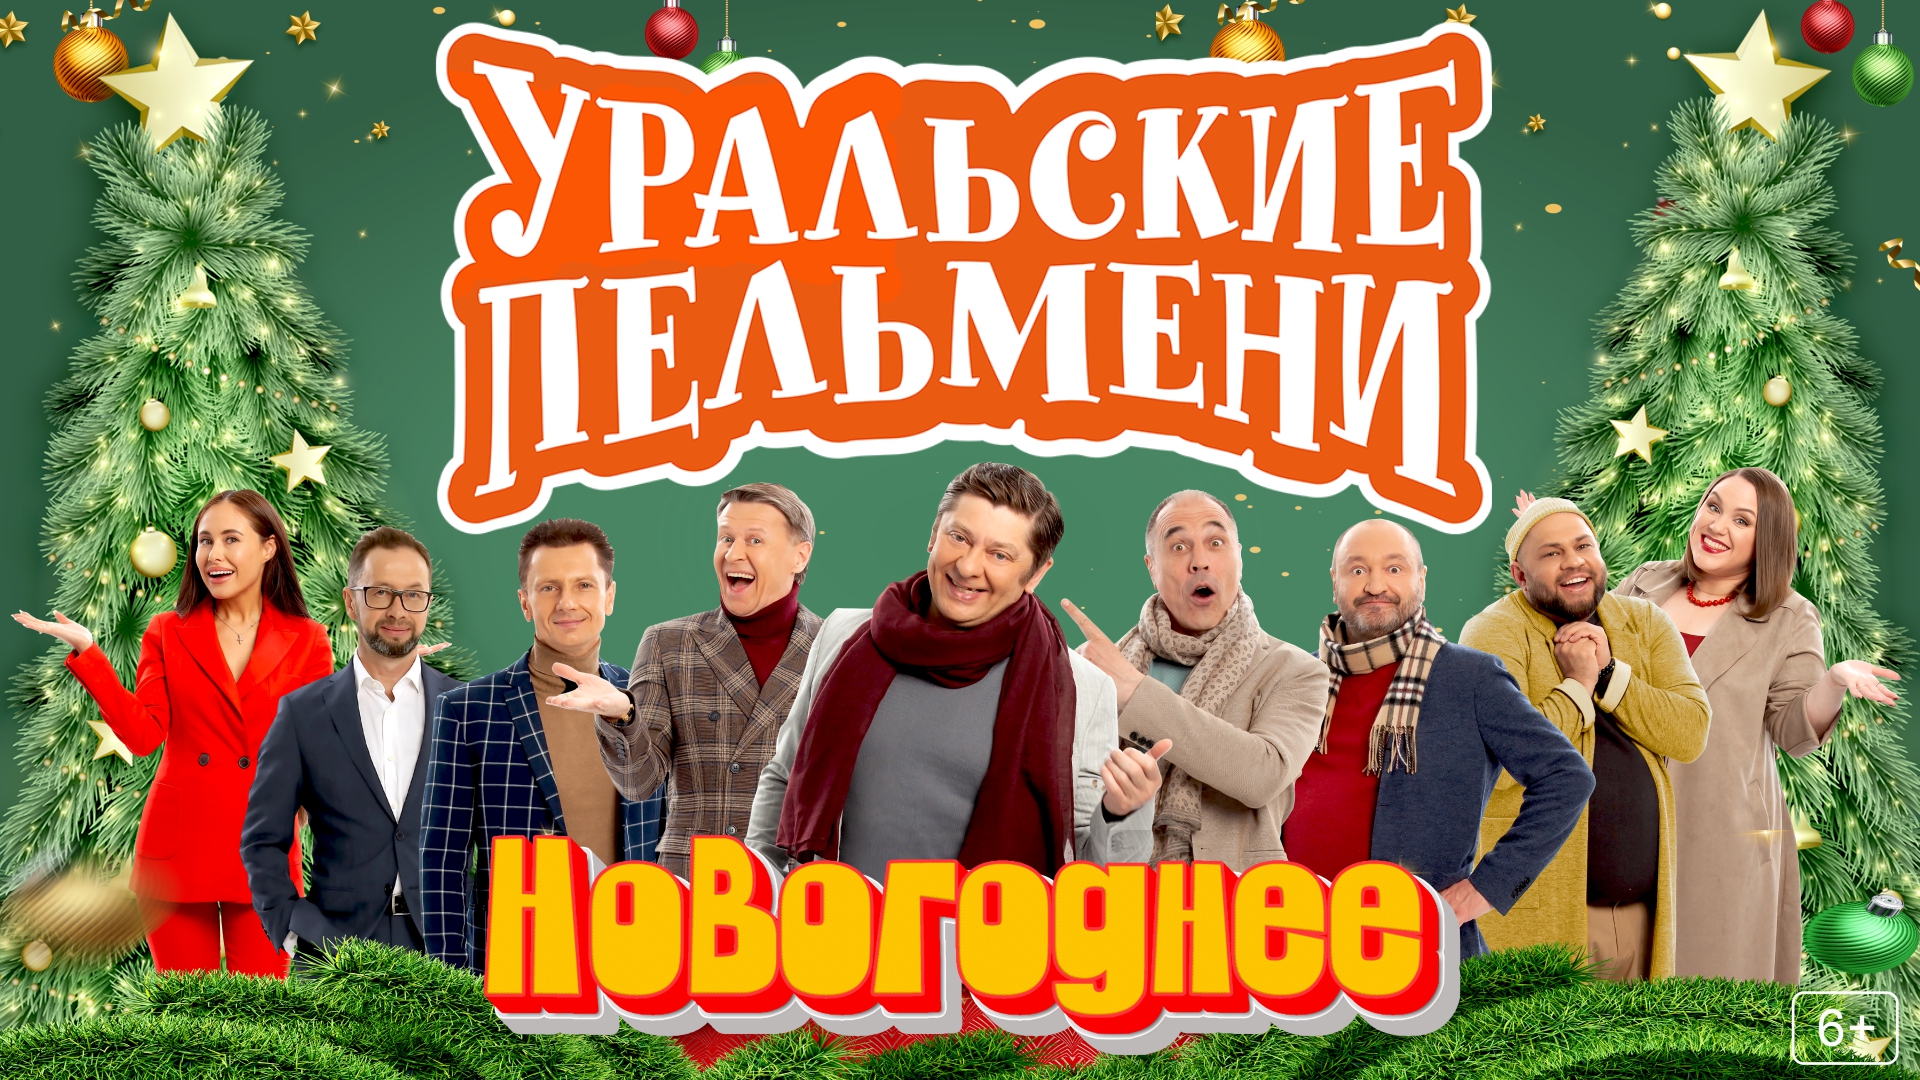 Уральские Пельмени "Новогоднее!"